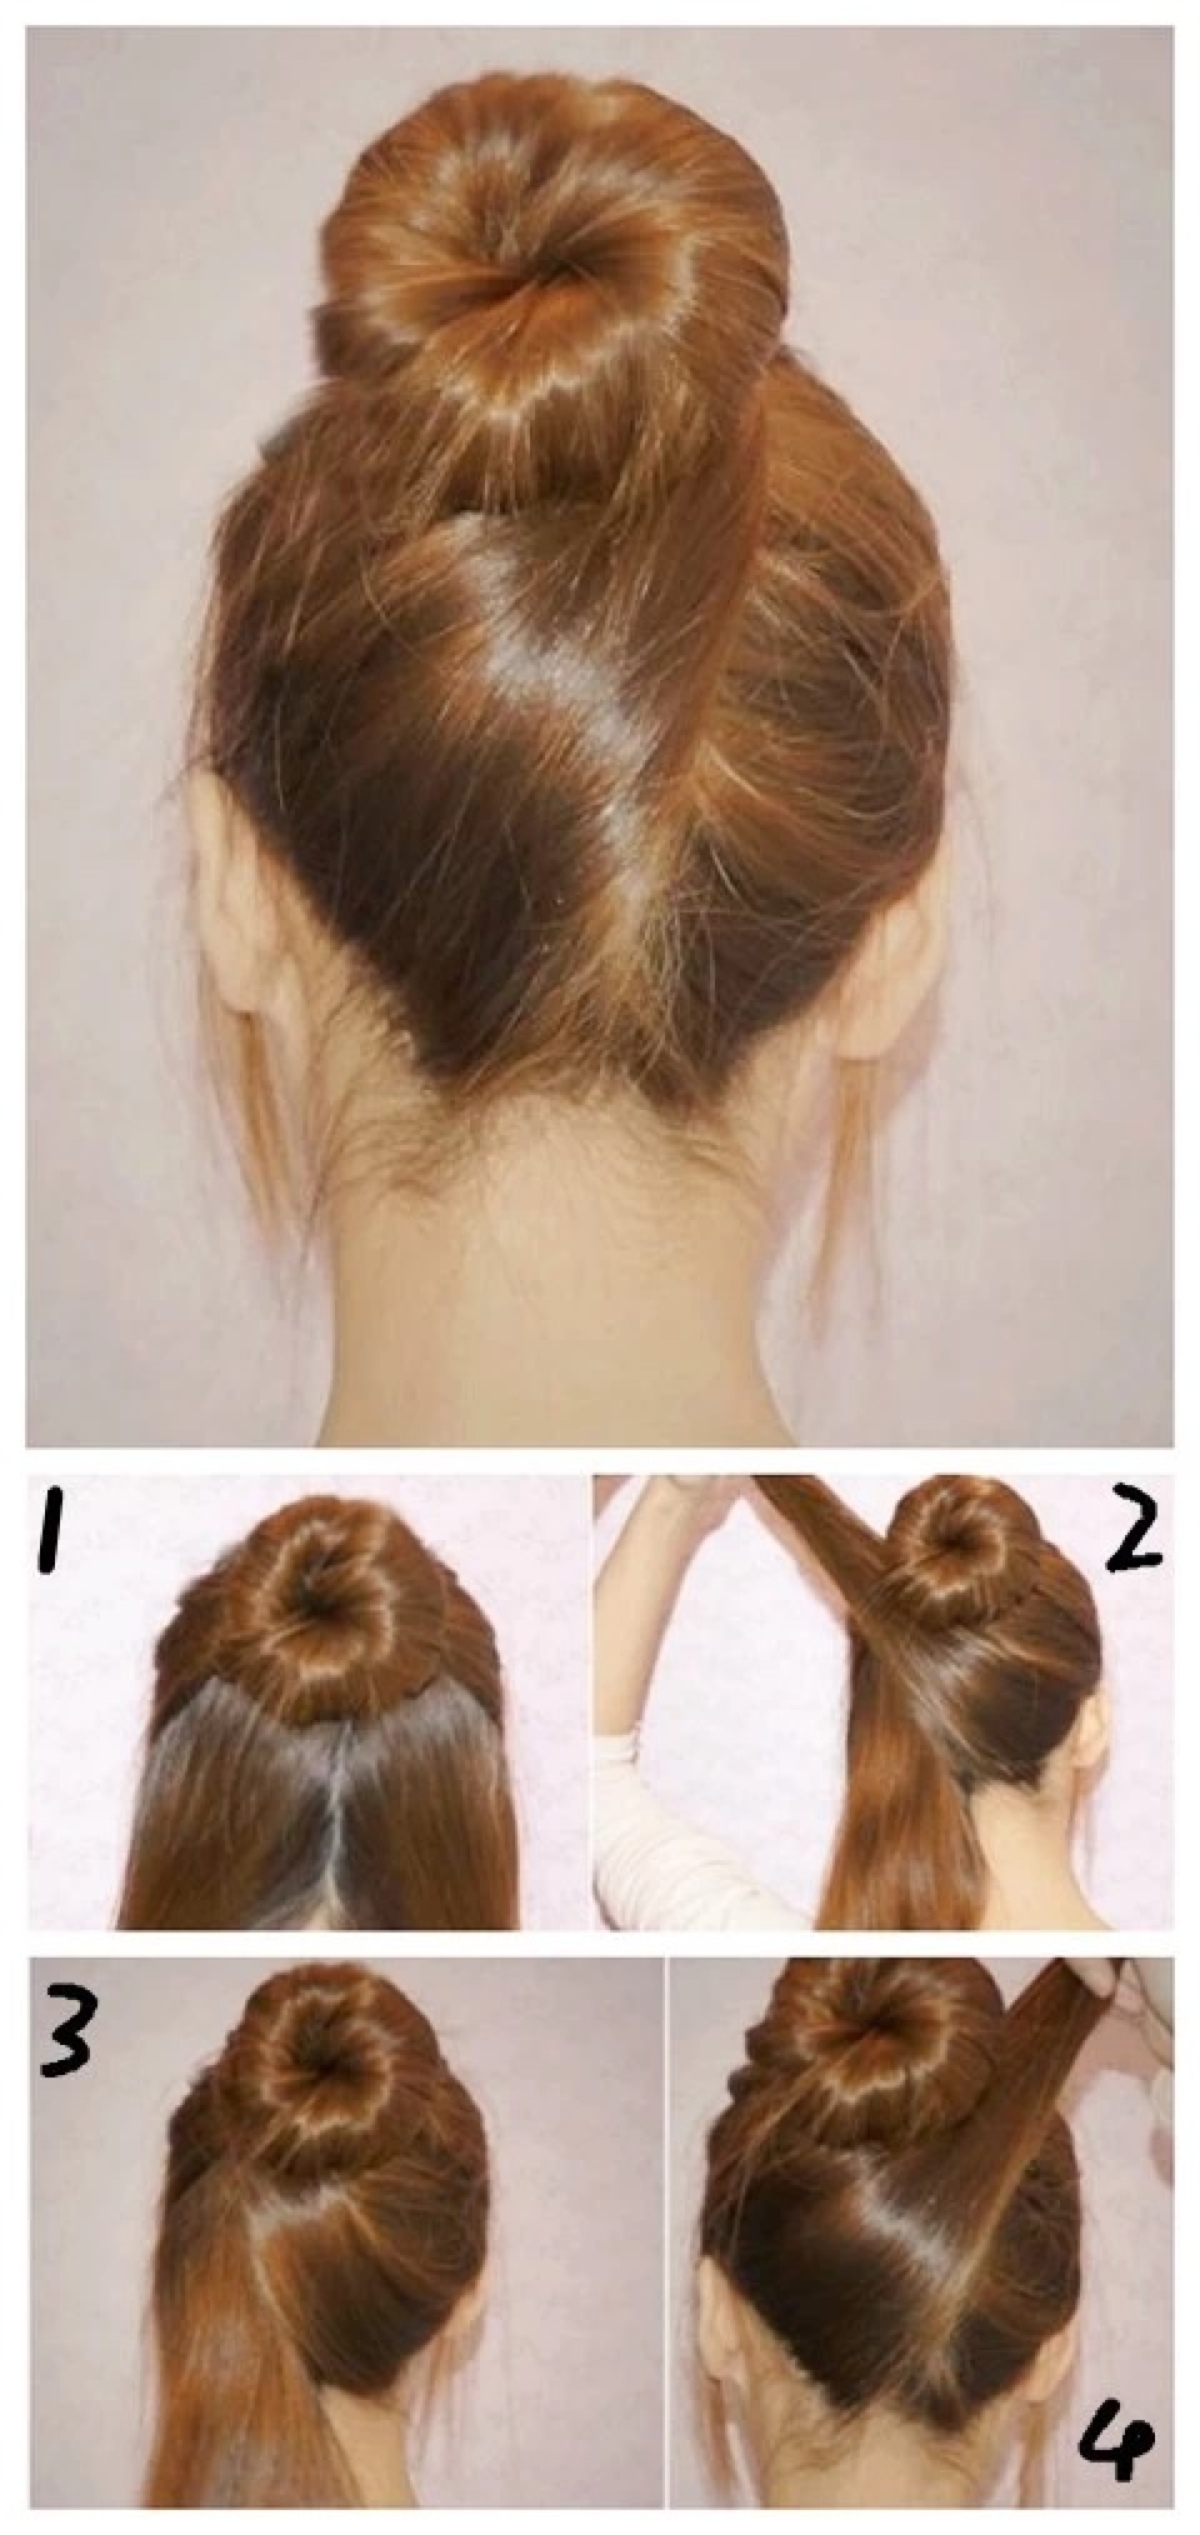 2 ,然后先将右边分好的发束往左边的方向绕,将右边的头发往左边提起